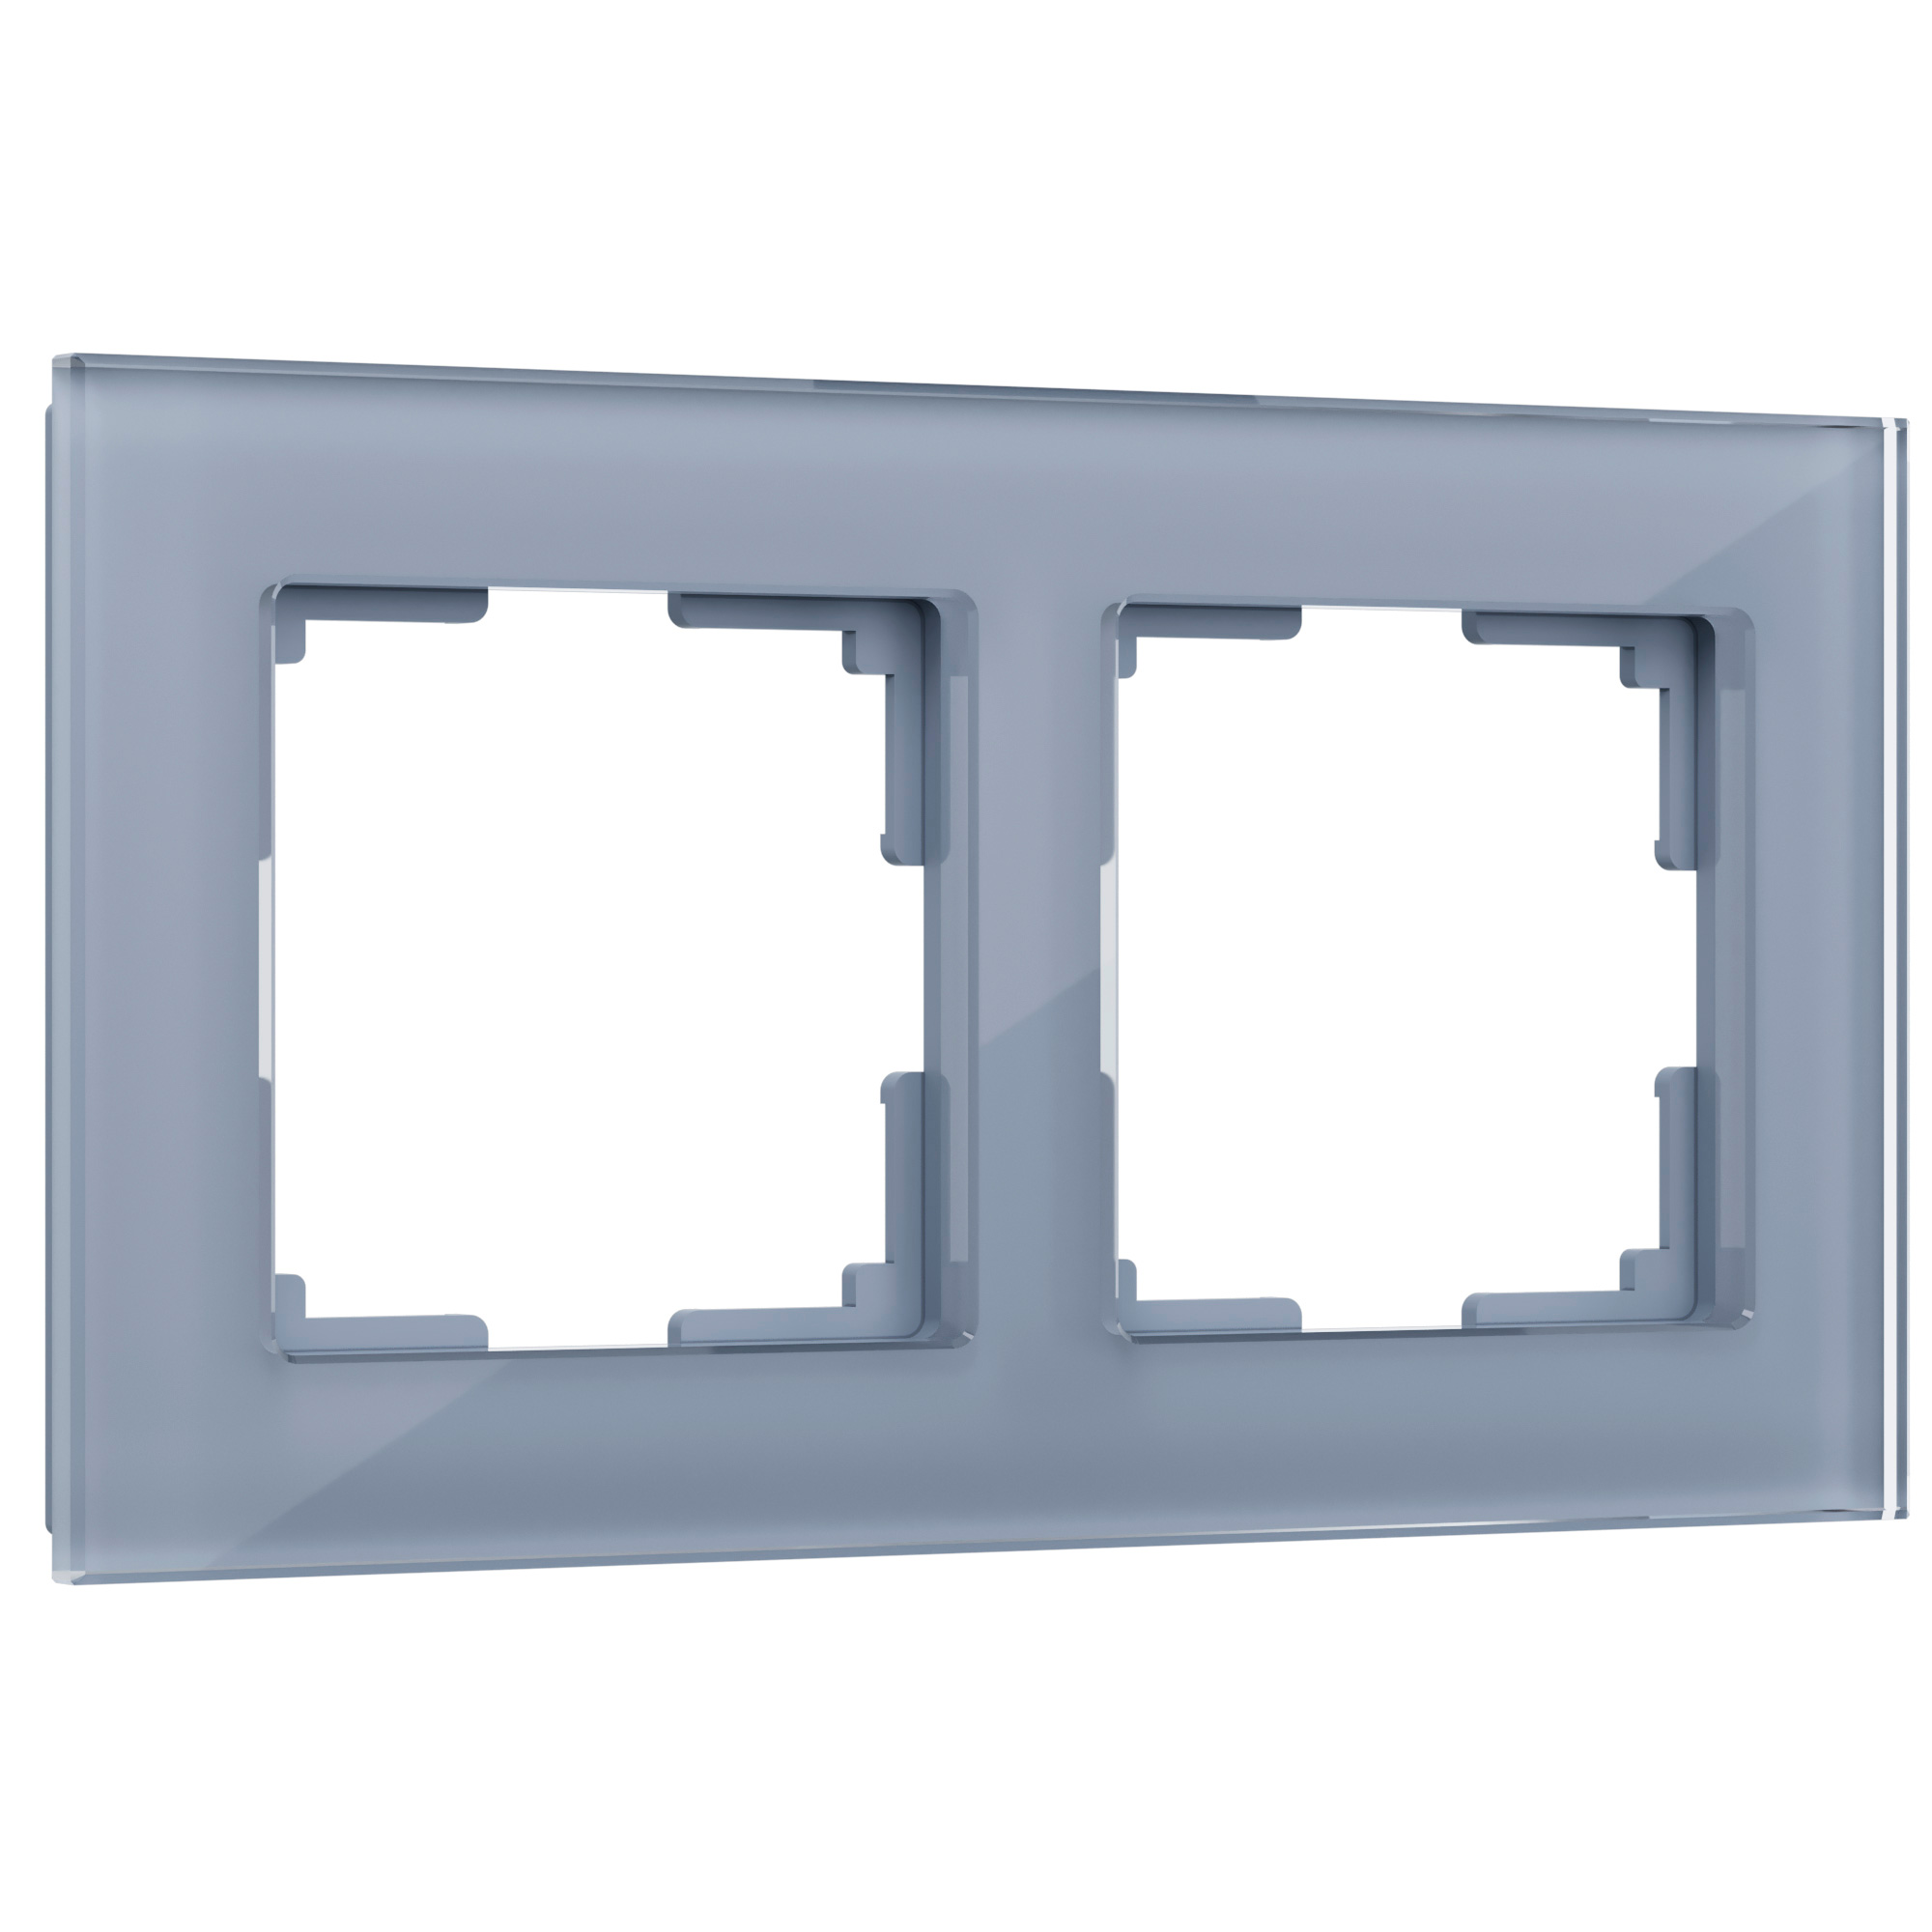 Рамка для розетки / выключателя на 2 поста Werkel W0021115  Favorit серый стекло рамка на 2 поста для розетки werkel favorit w0081108 4690389160226